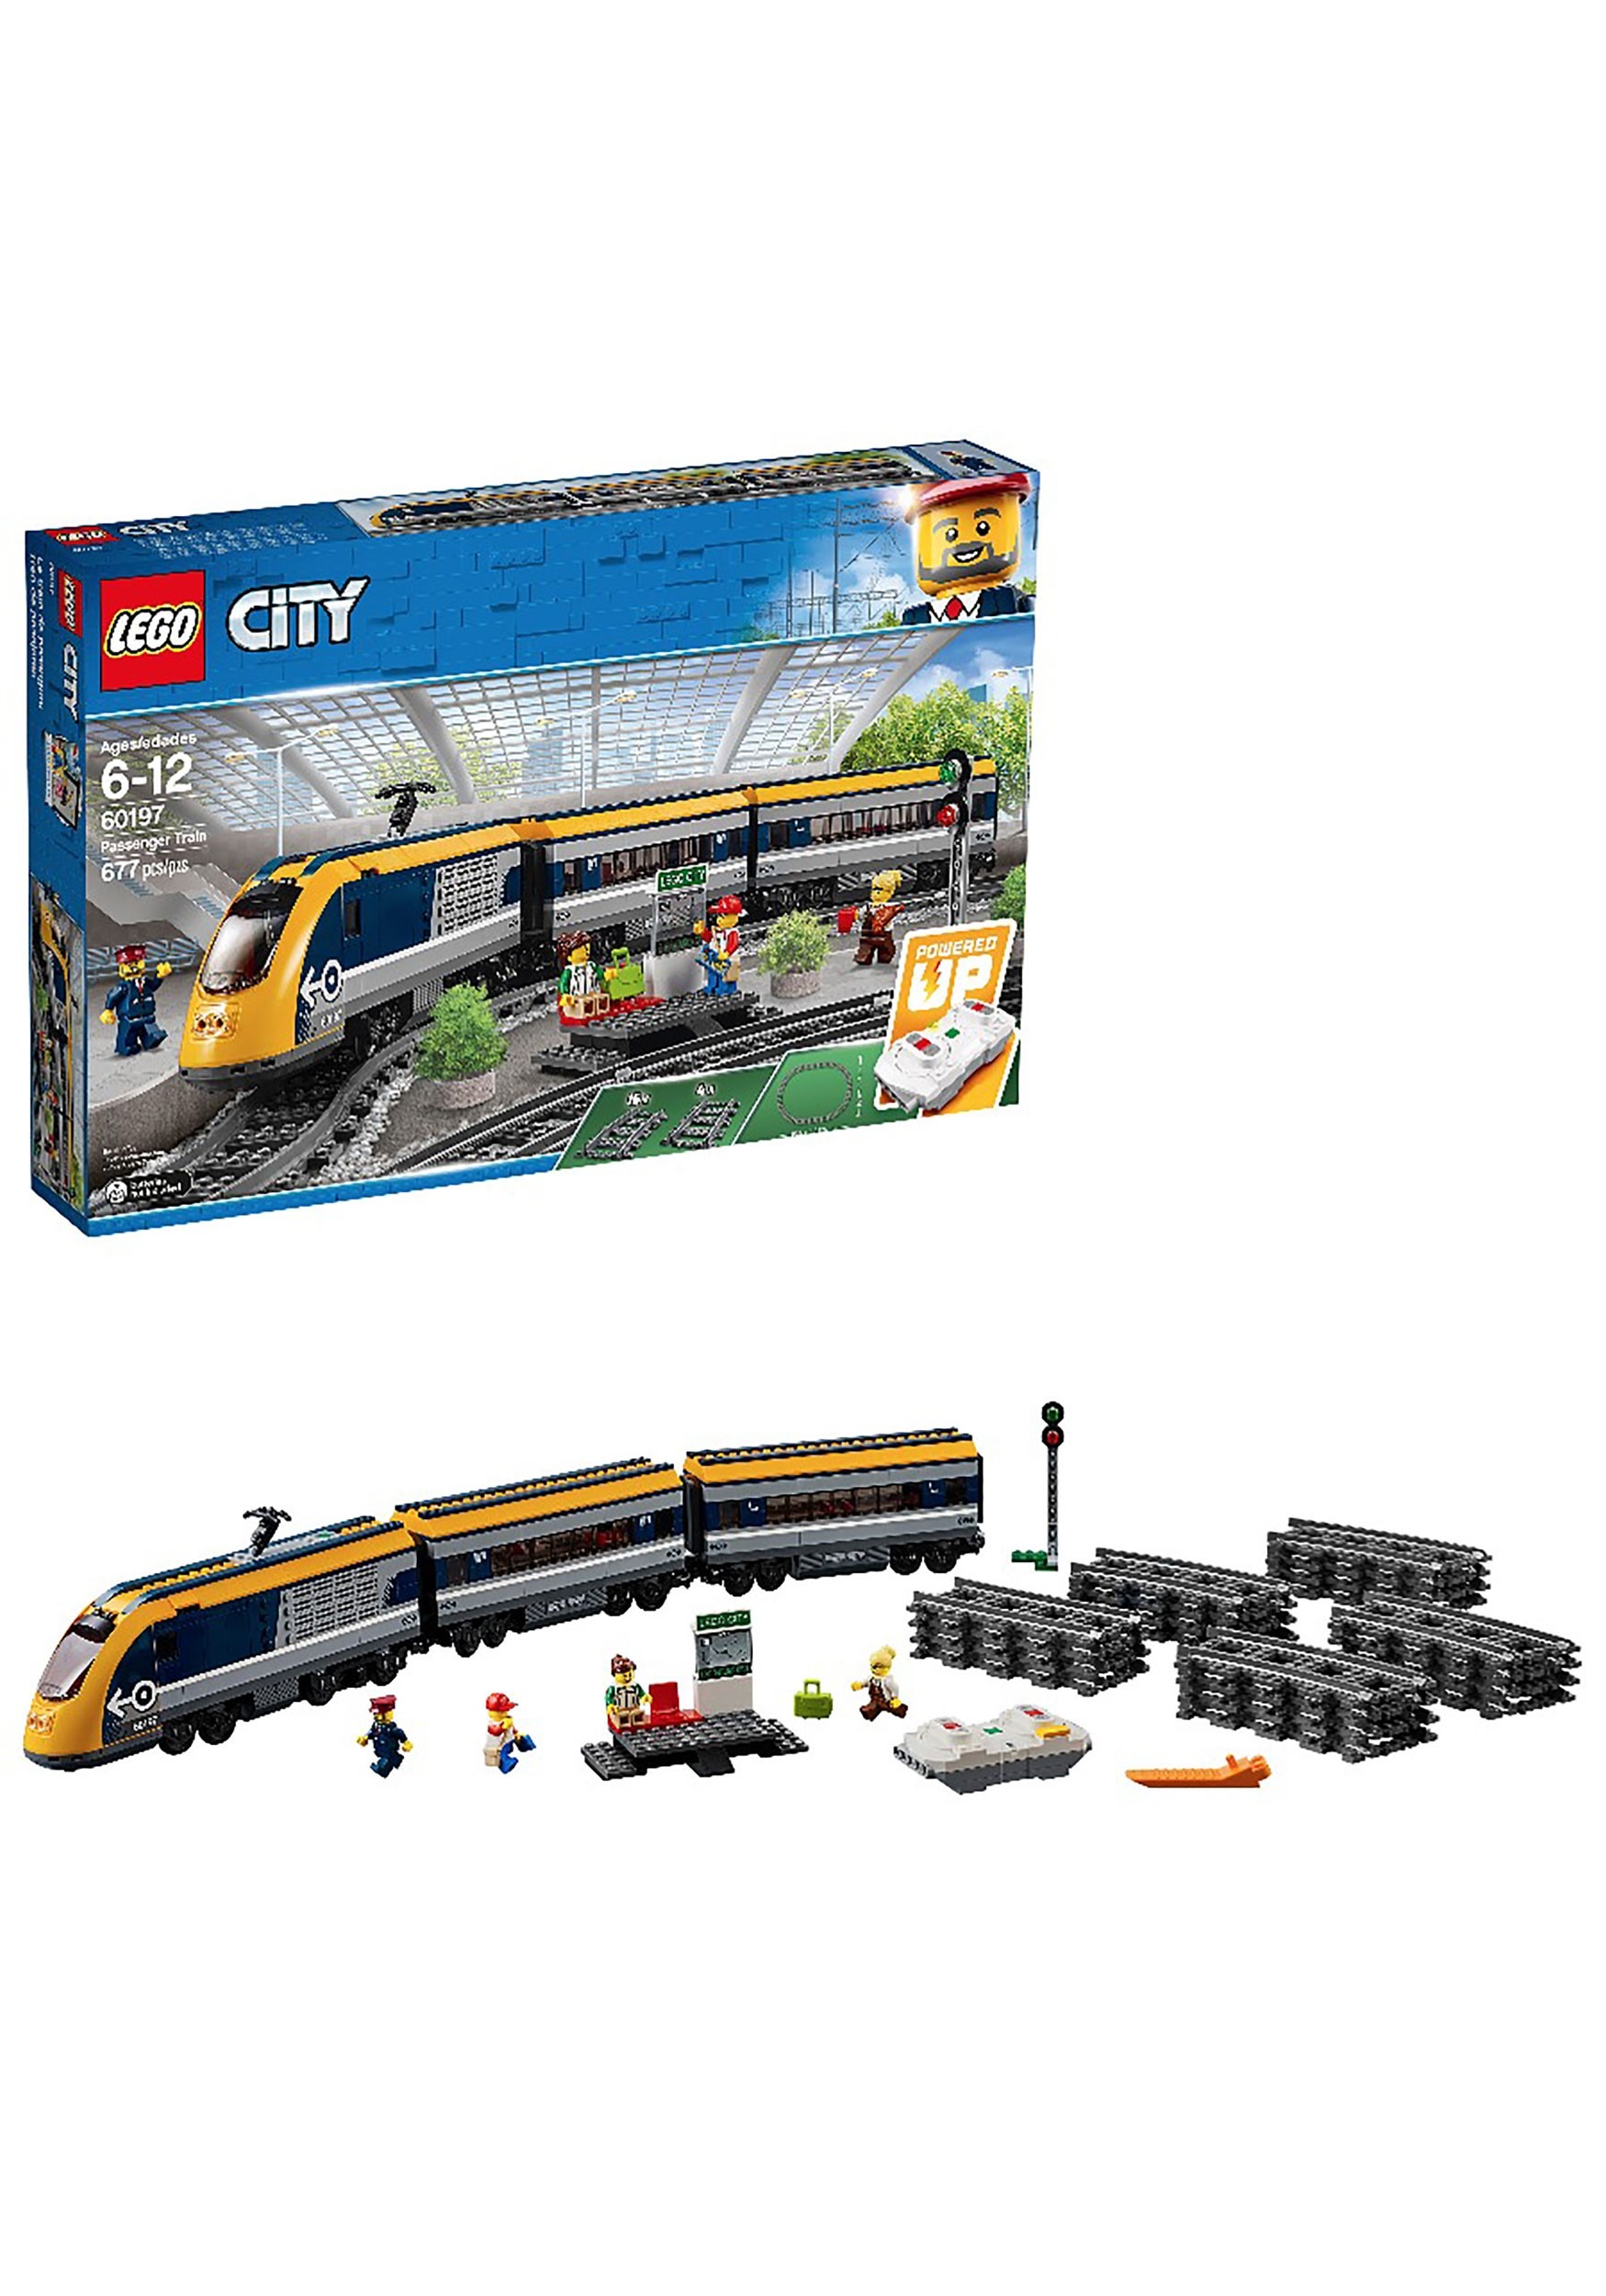 Passenger Train: LEGO City Building Set